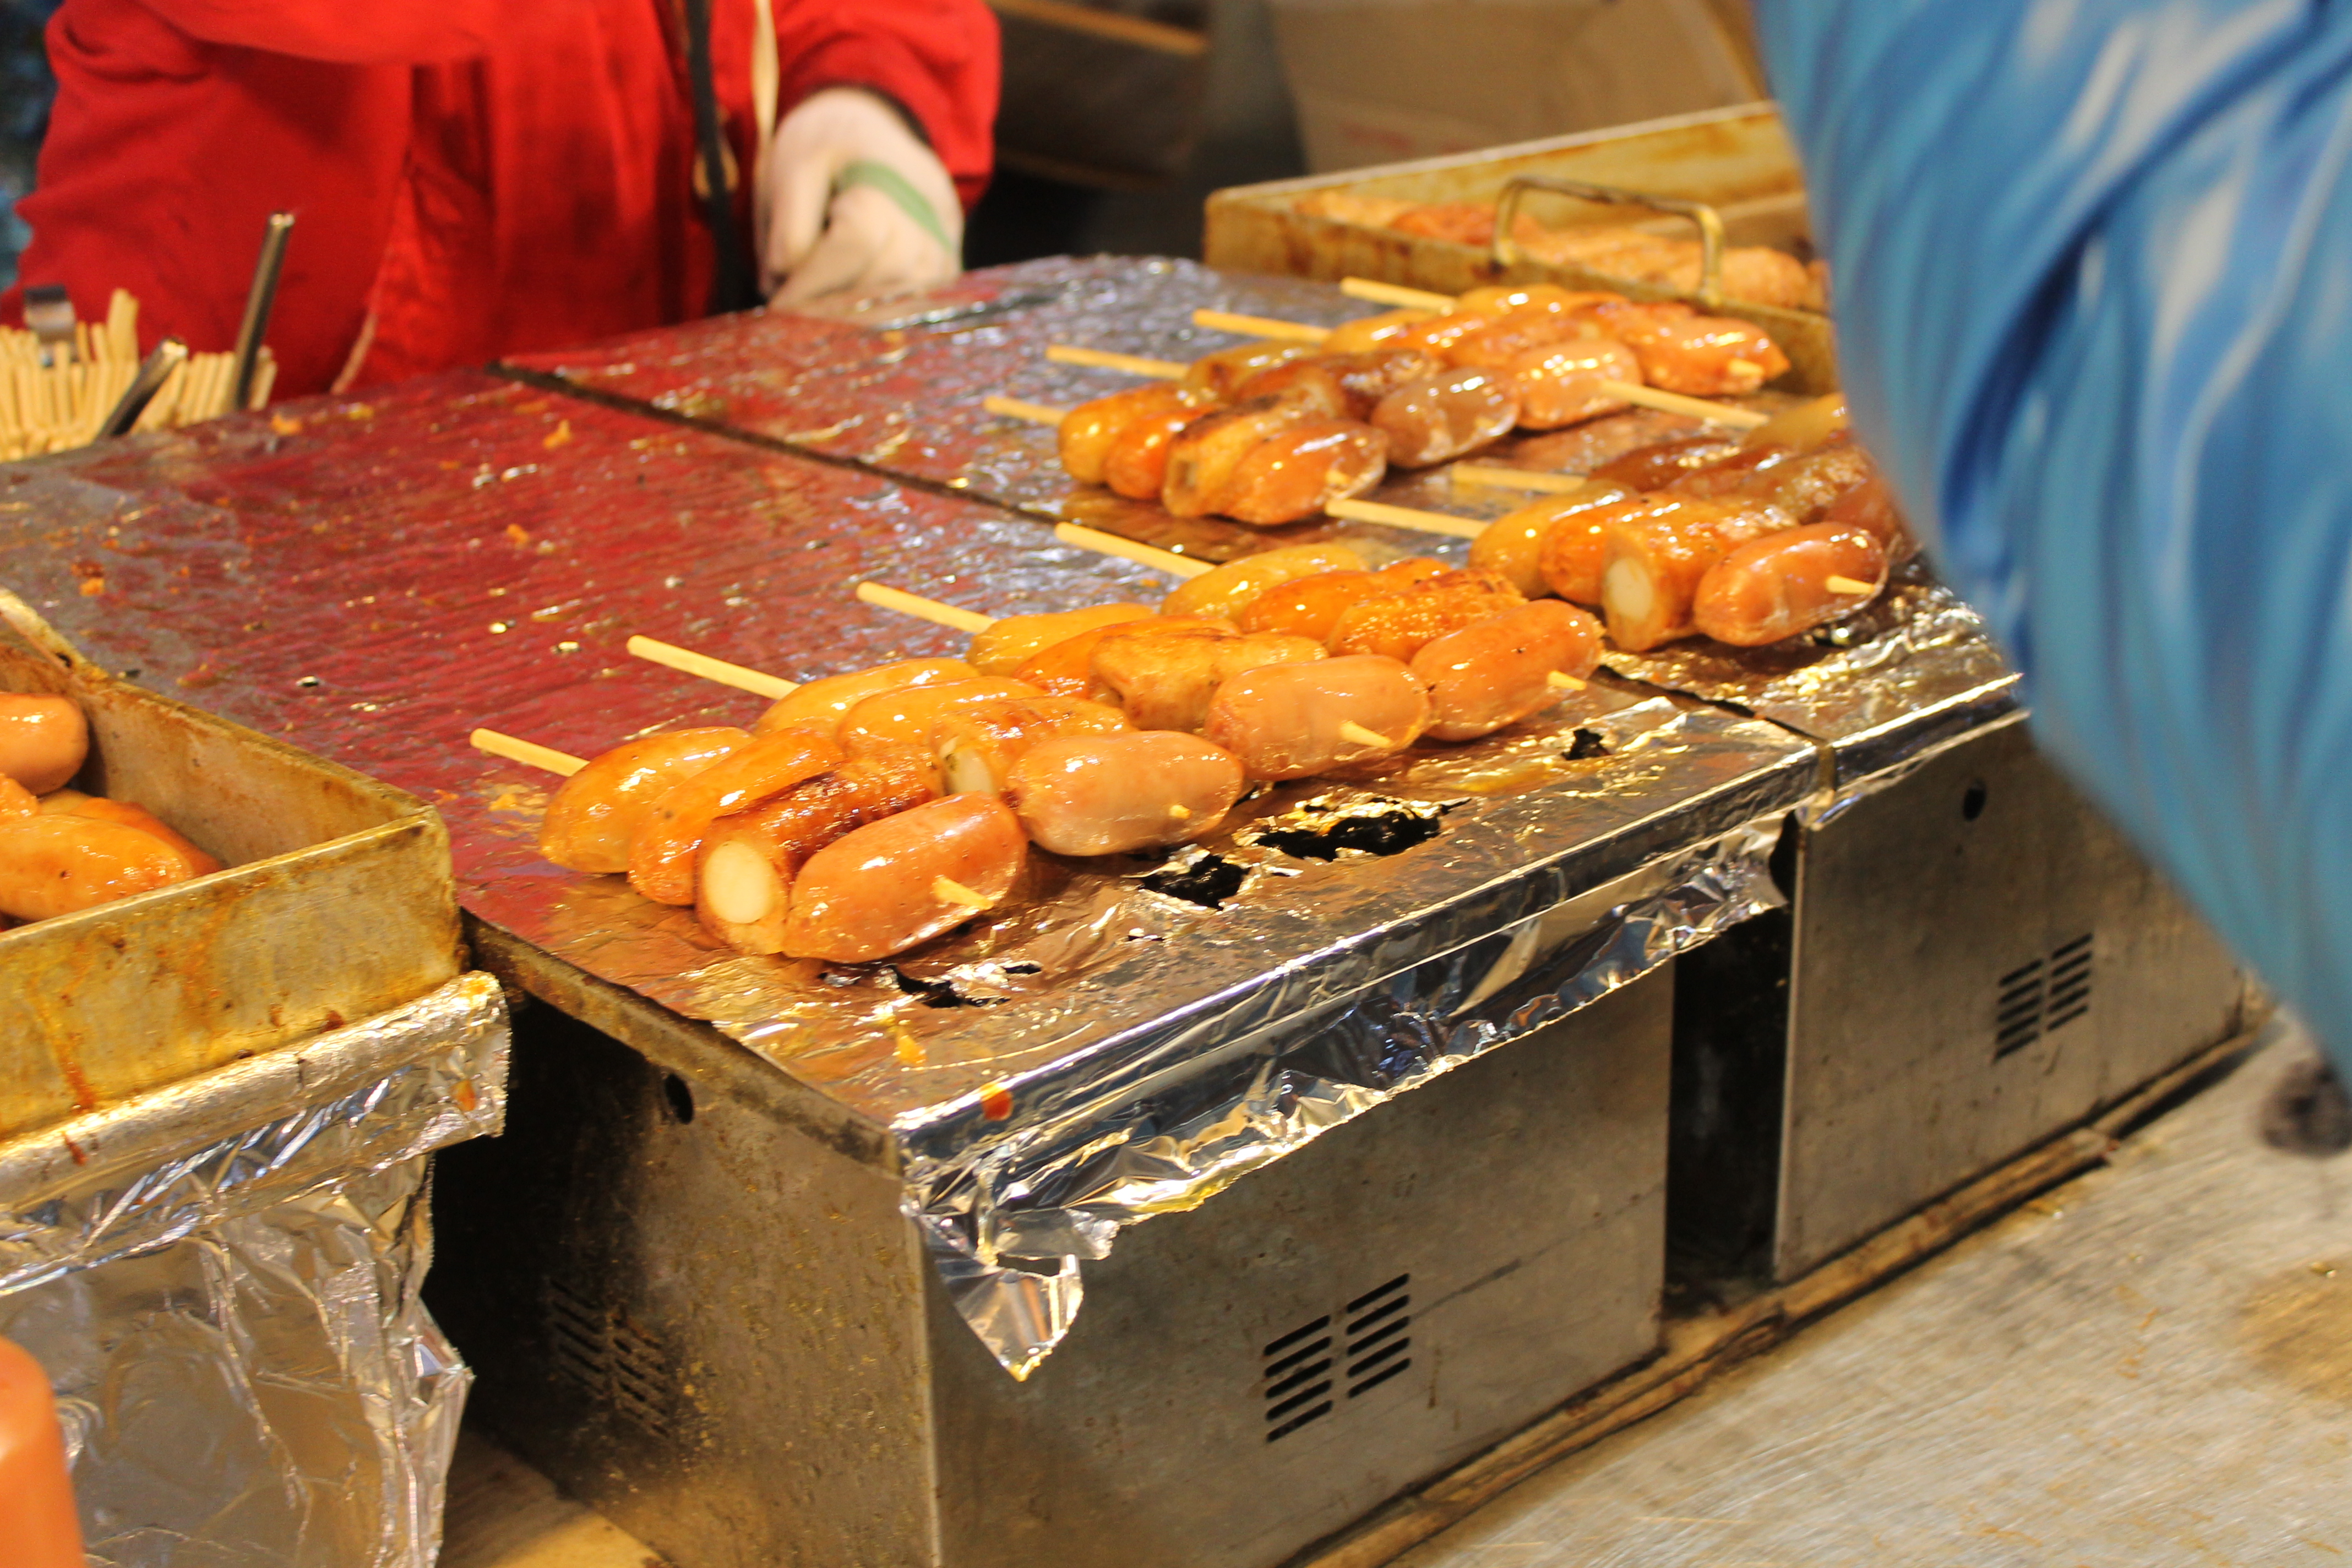 明洞街头的烤香肠,是否很吸引呢? 韩国路边摊